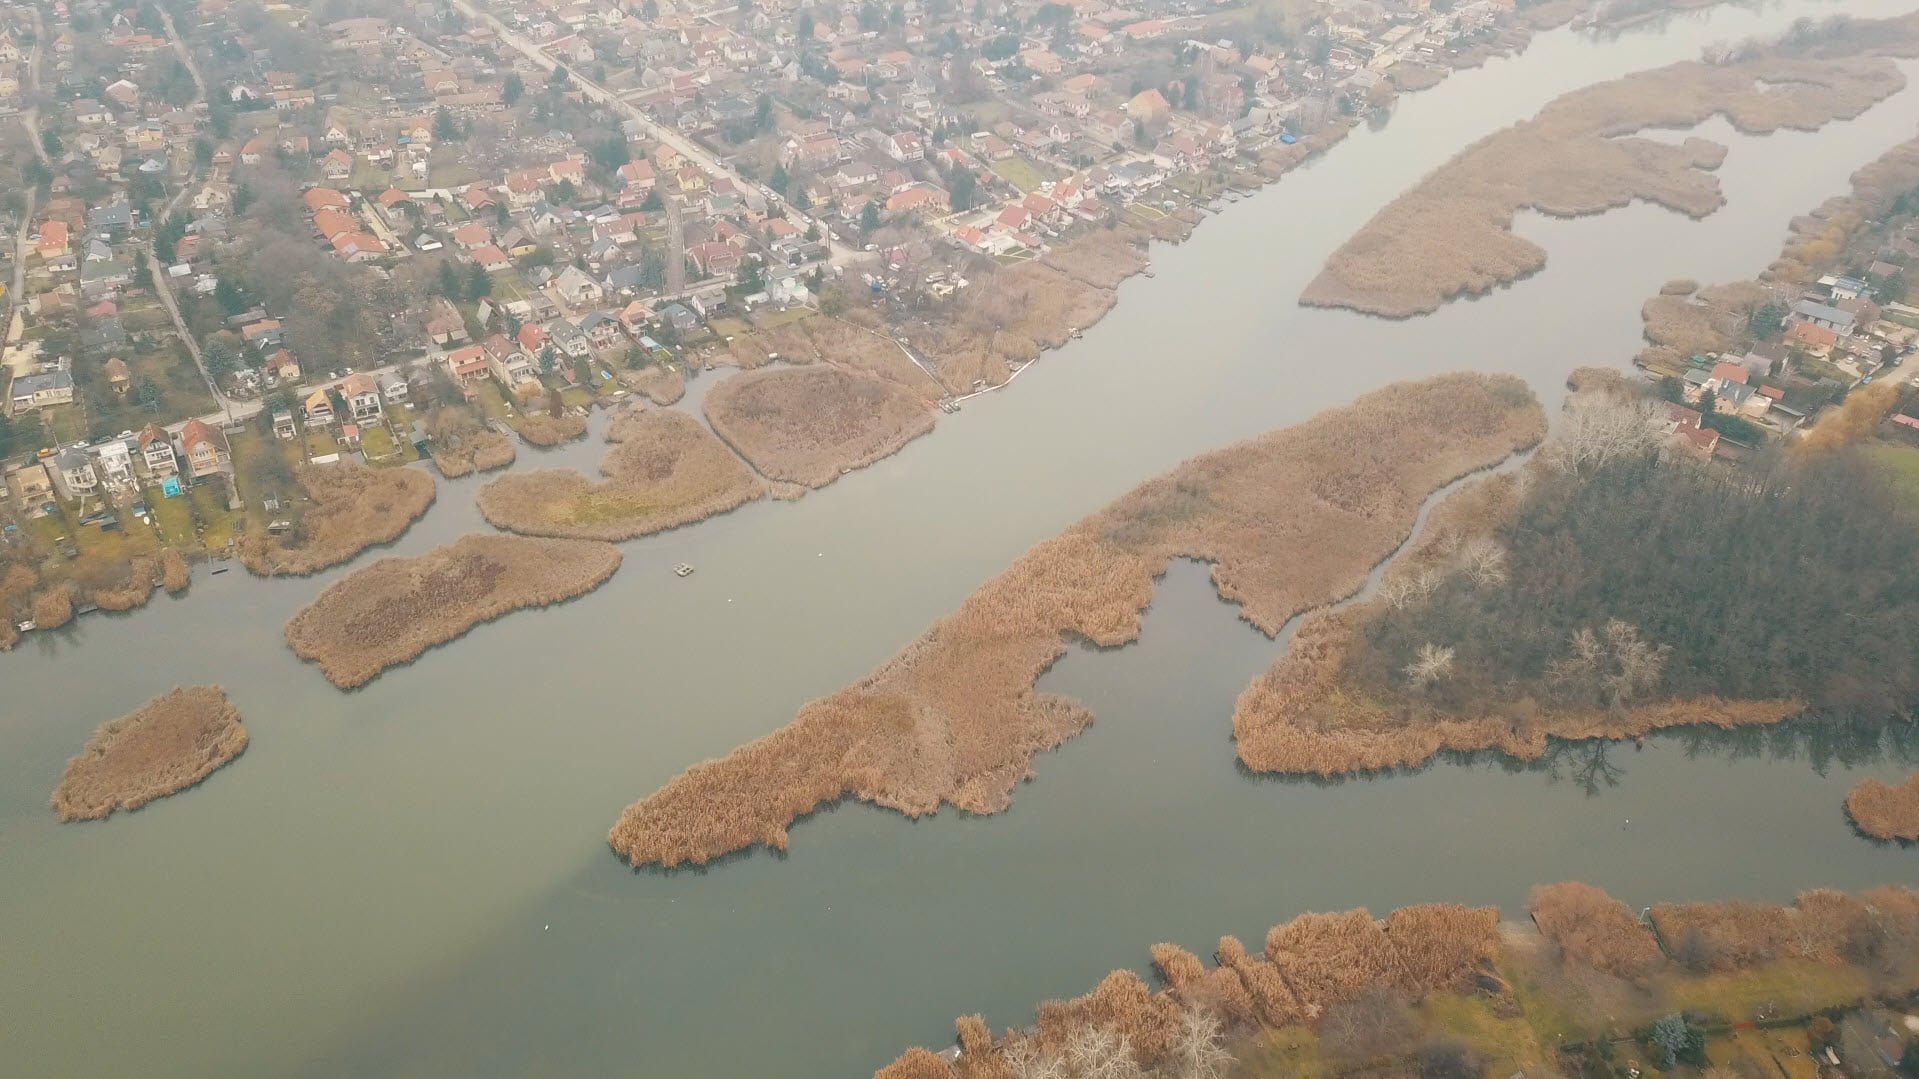 Brutális szennyezés a Dunán, 50 éve nem látott ilyet a folyó - videó